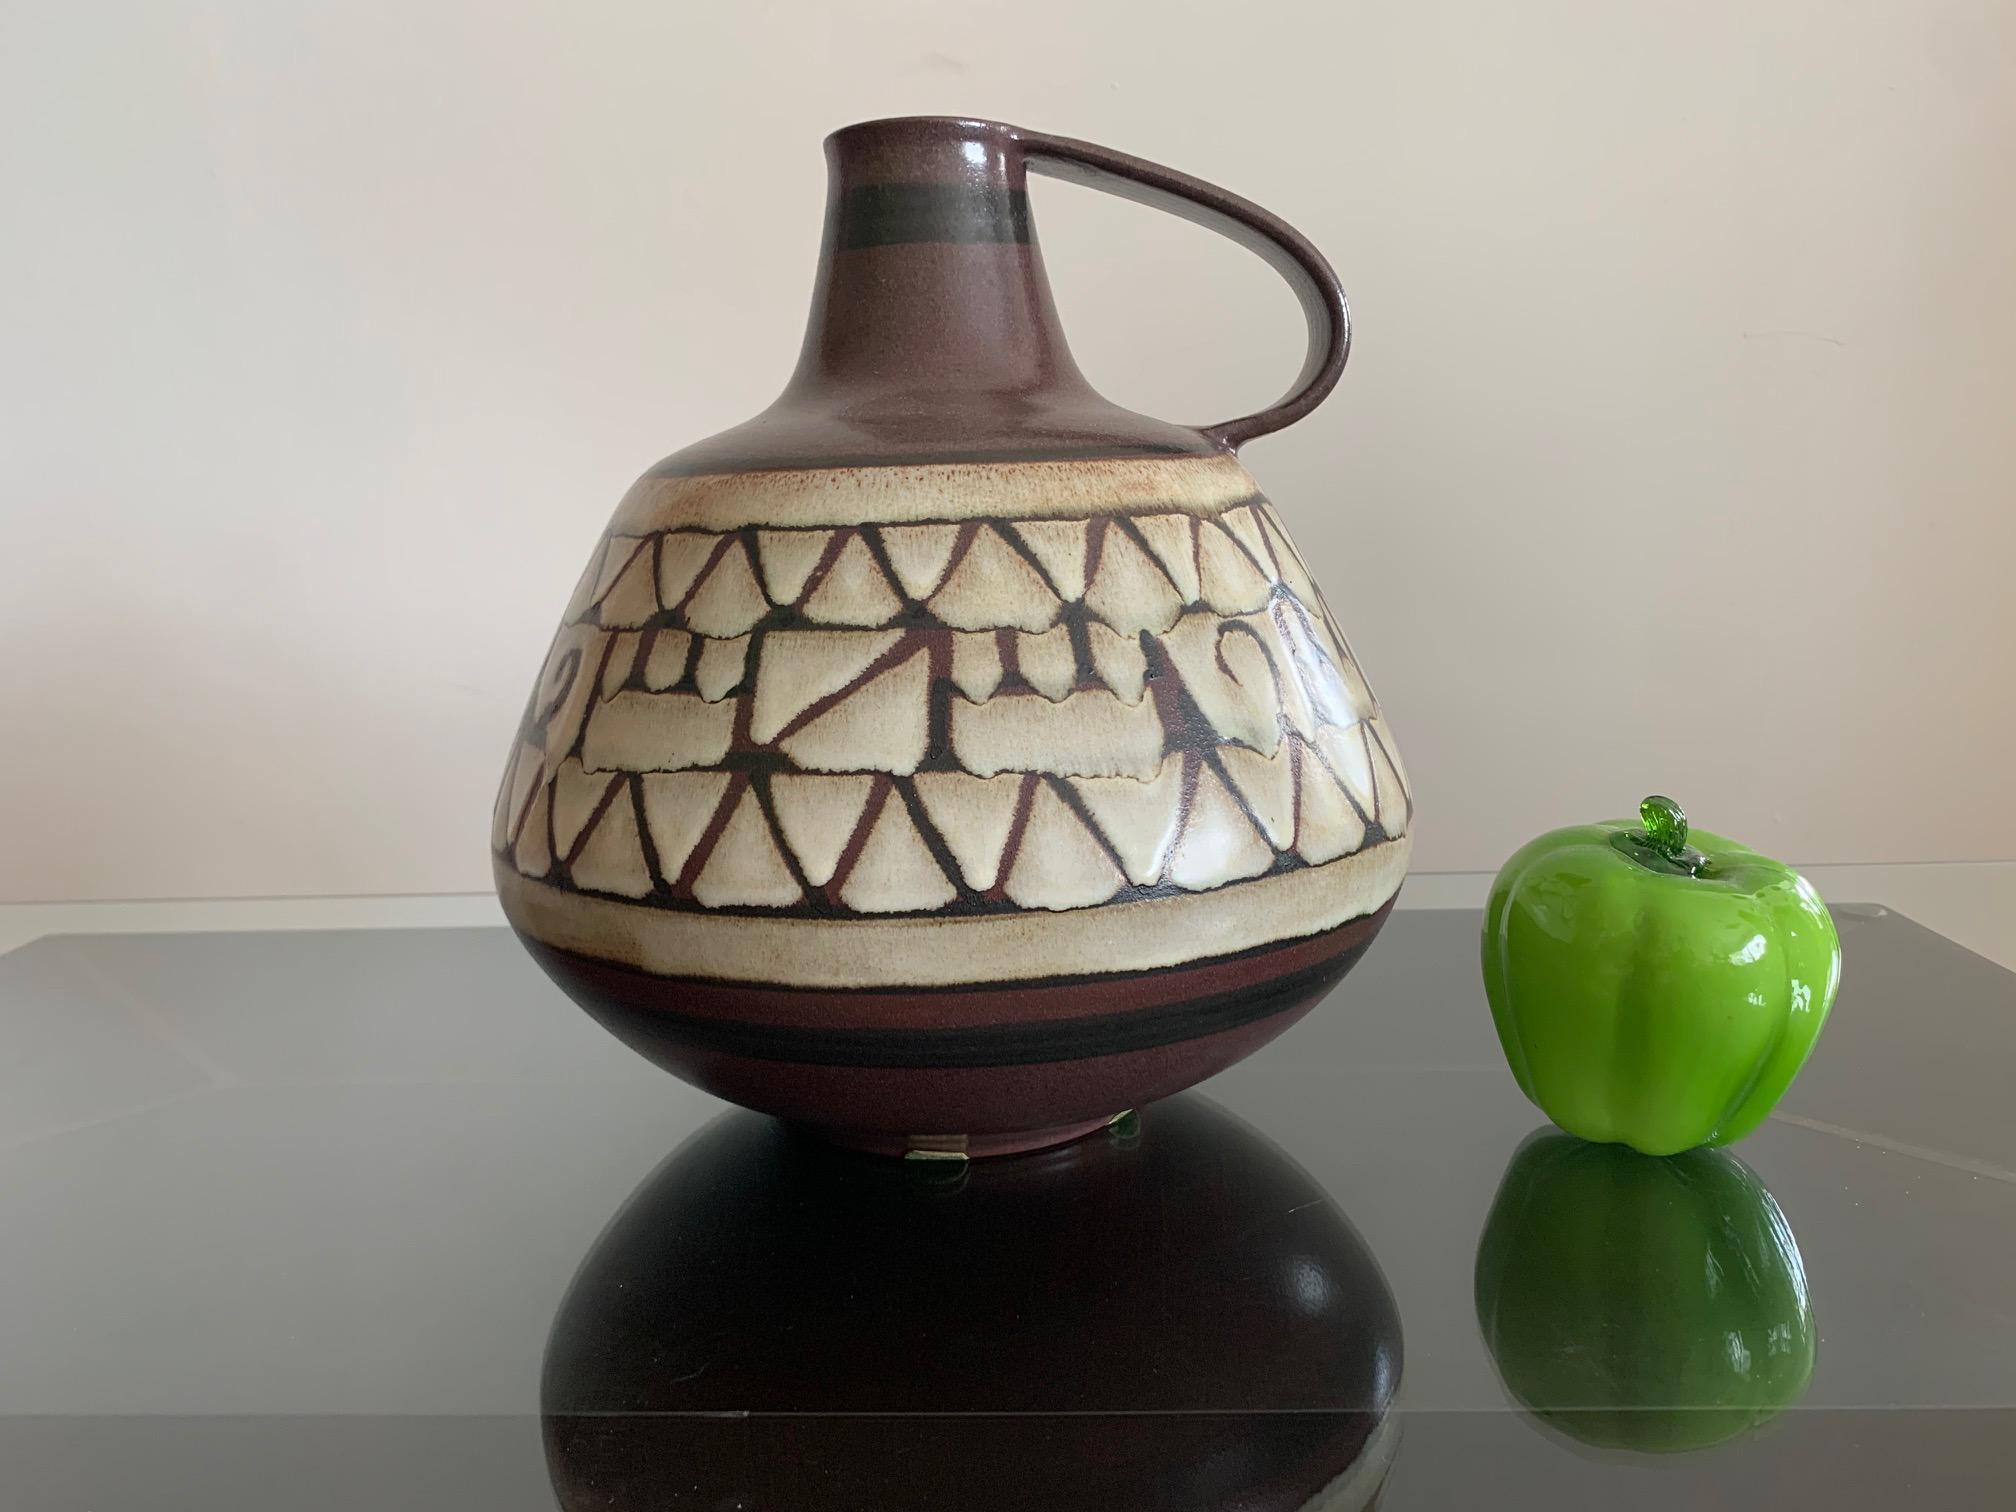 Großes Keramikgefäß von Alvino Bagni für Raymor, Italien, ca. 1960er Jahre. Krugform mit schönem stilisiertem Dekor in Brauntönen.